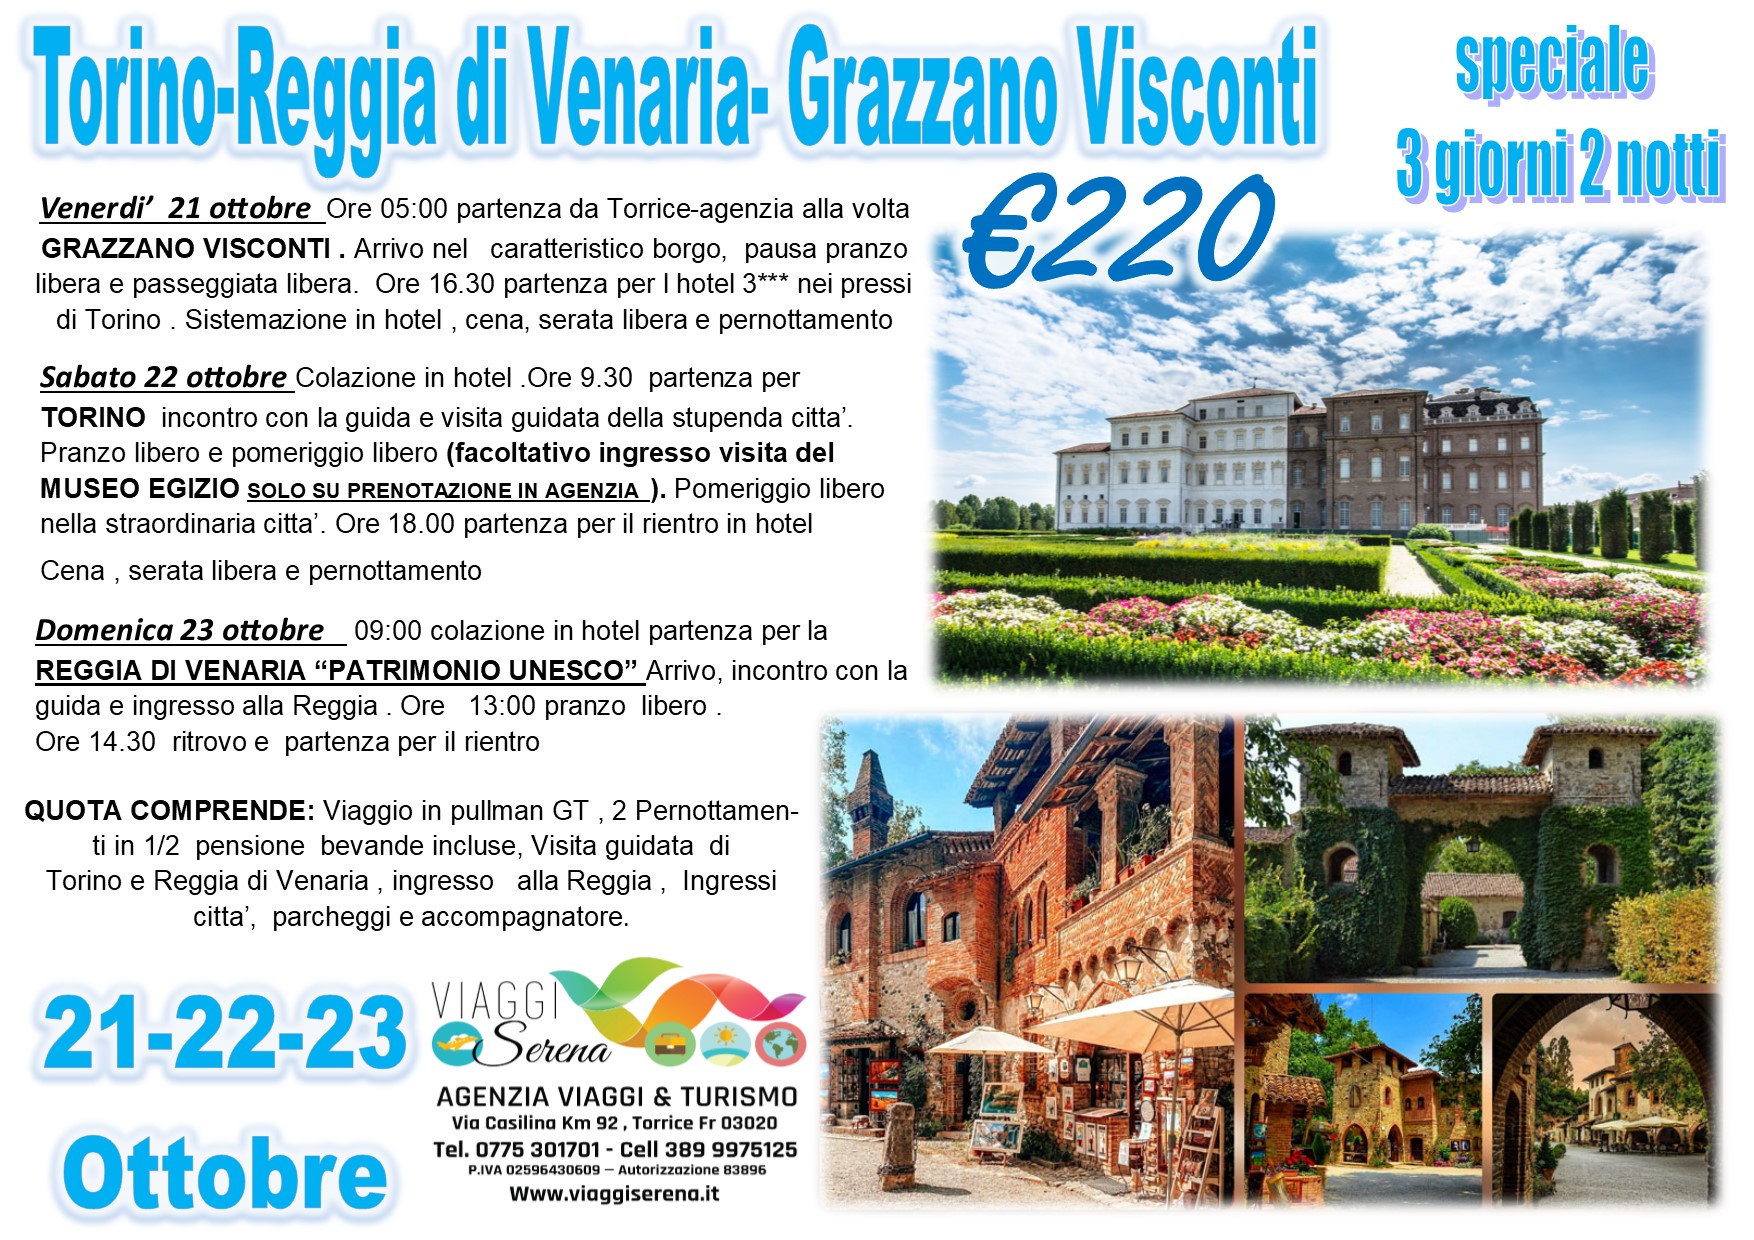 Viaggi di Gruppo: Torino, Reggia di Venaria & Grazzano Visconti  21-22-23 Ottobre € 220,00